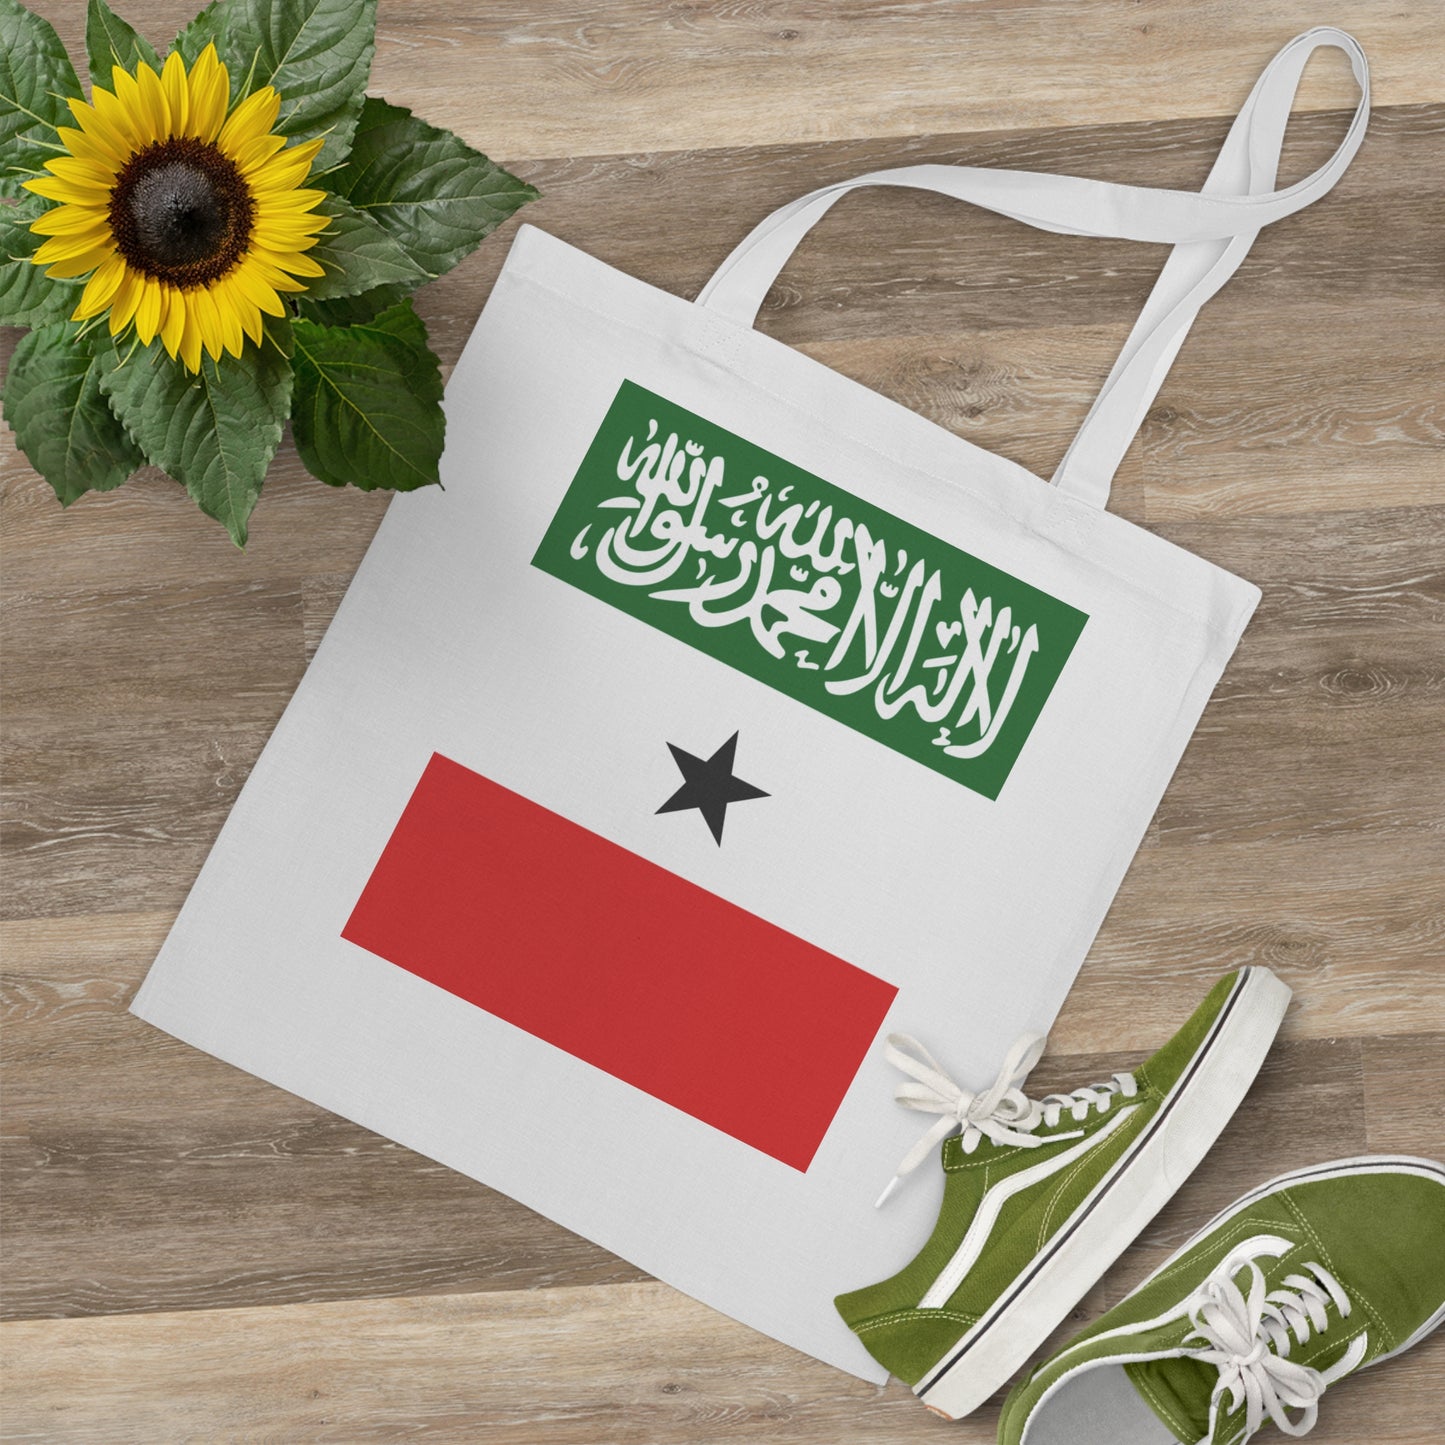 Tote Bag - Somaliland Flag